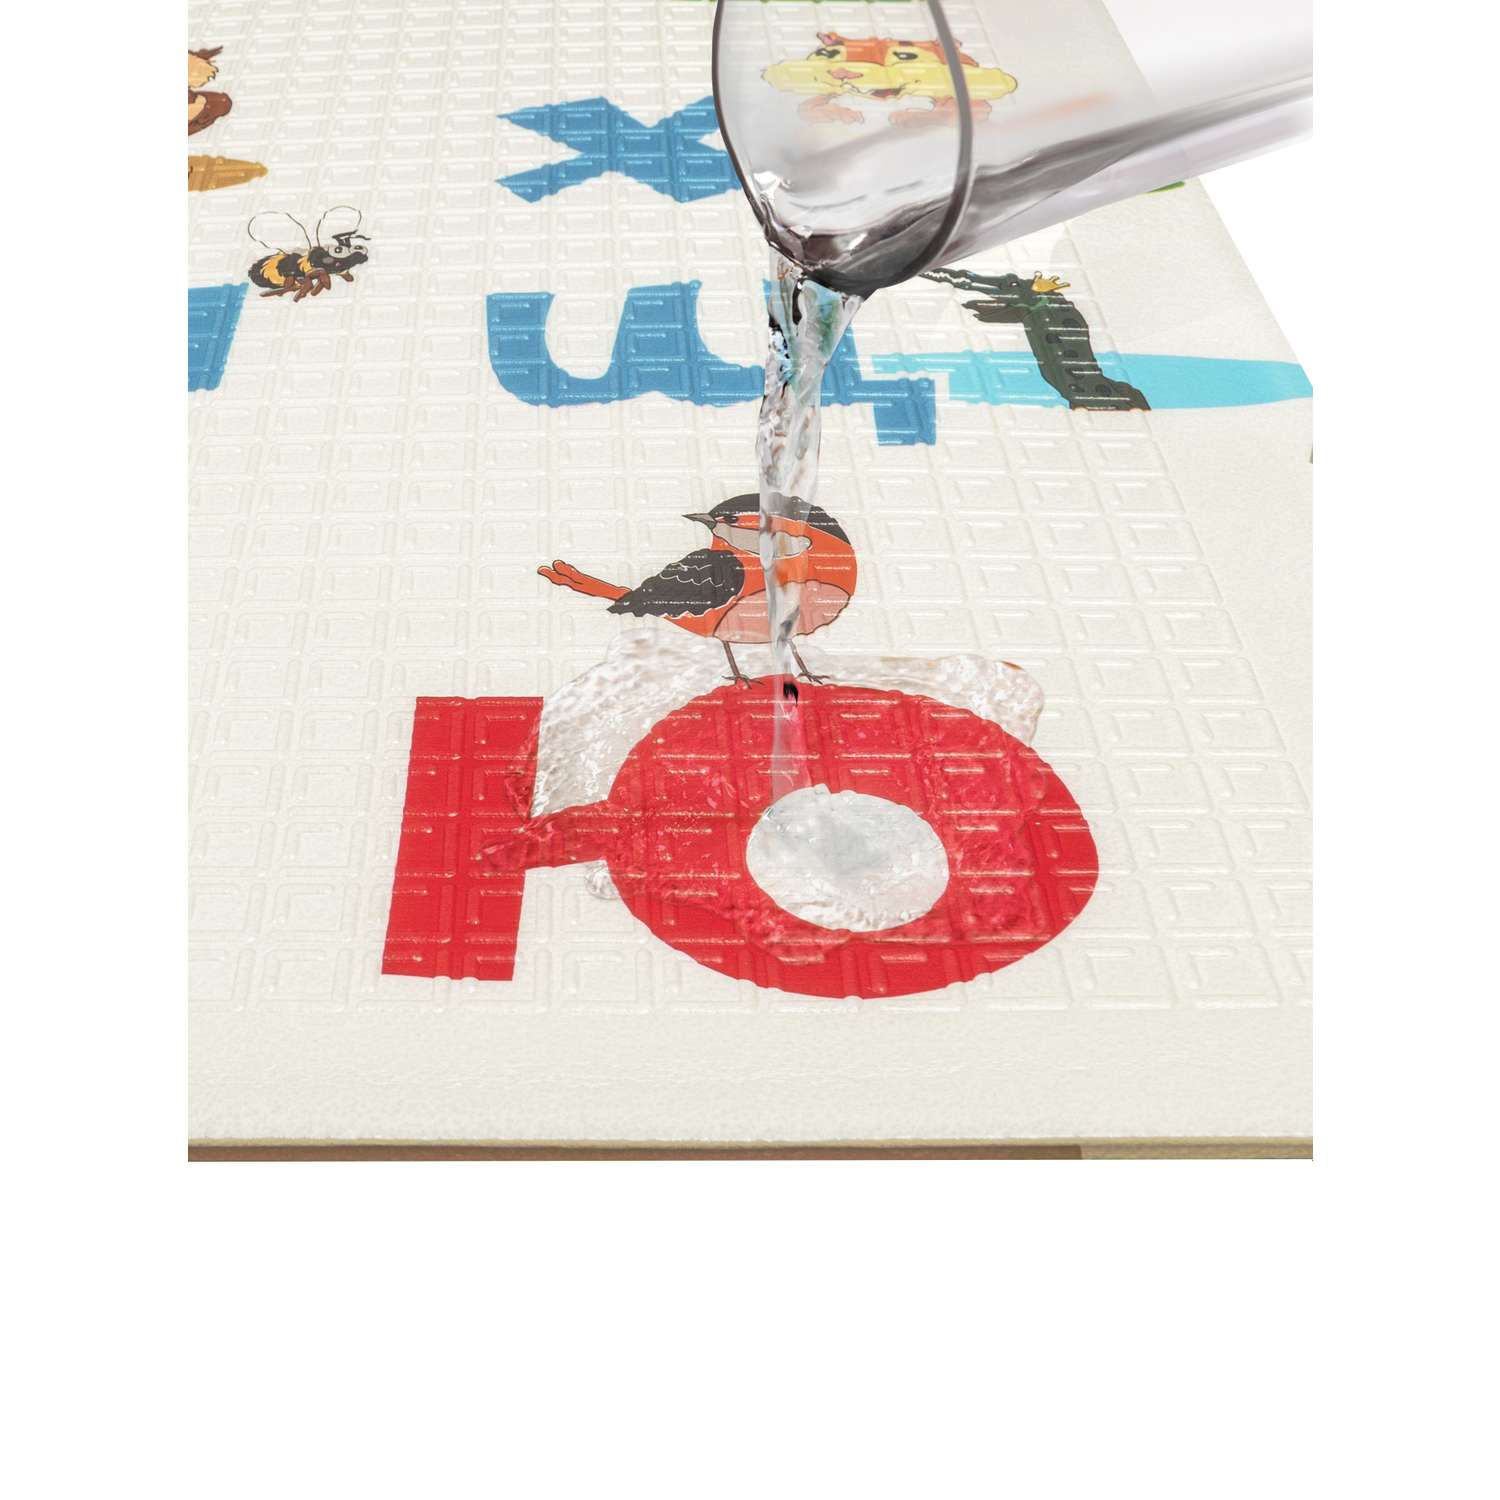 Детский коврик WellMat для ползания 150x200 Premium Русский алфавит/Городок складной развивающий - фото 15